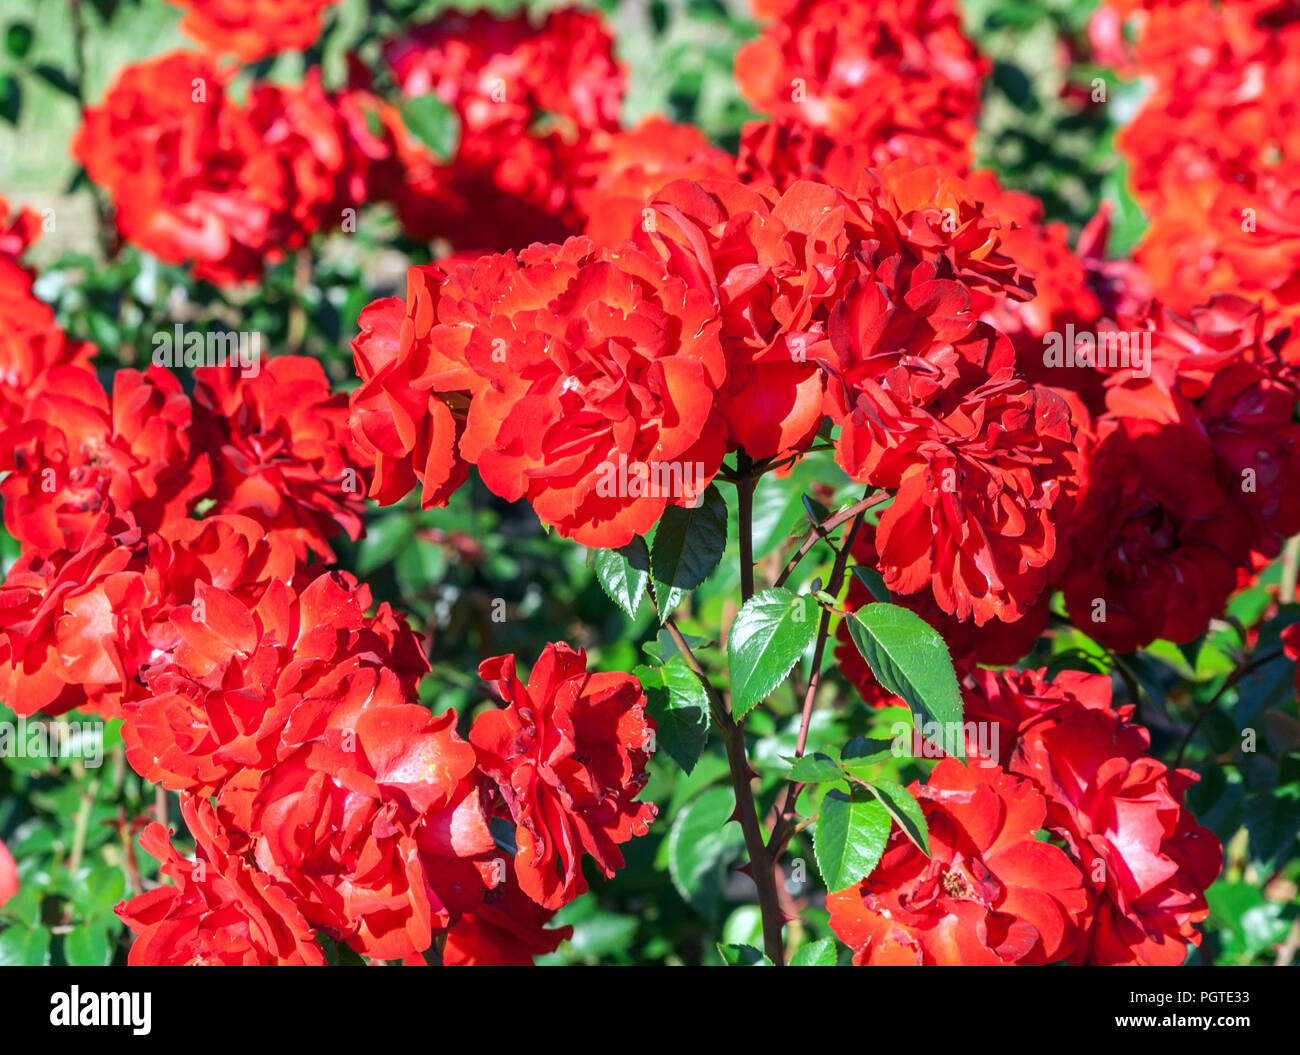 Rose grade Domstadt Fulda, Blüten von Rosen sind rot mit weißen Streifen, sehr hell, auf einem niedrigen Strauch mit wunderschönen Dunkelgrün glänzendes laub, Stockfoto